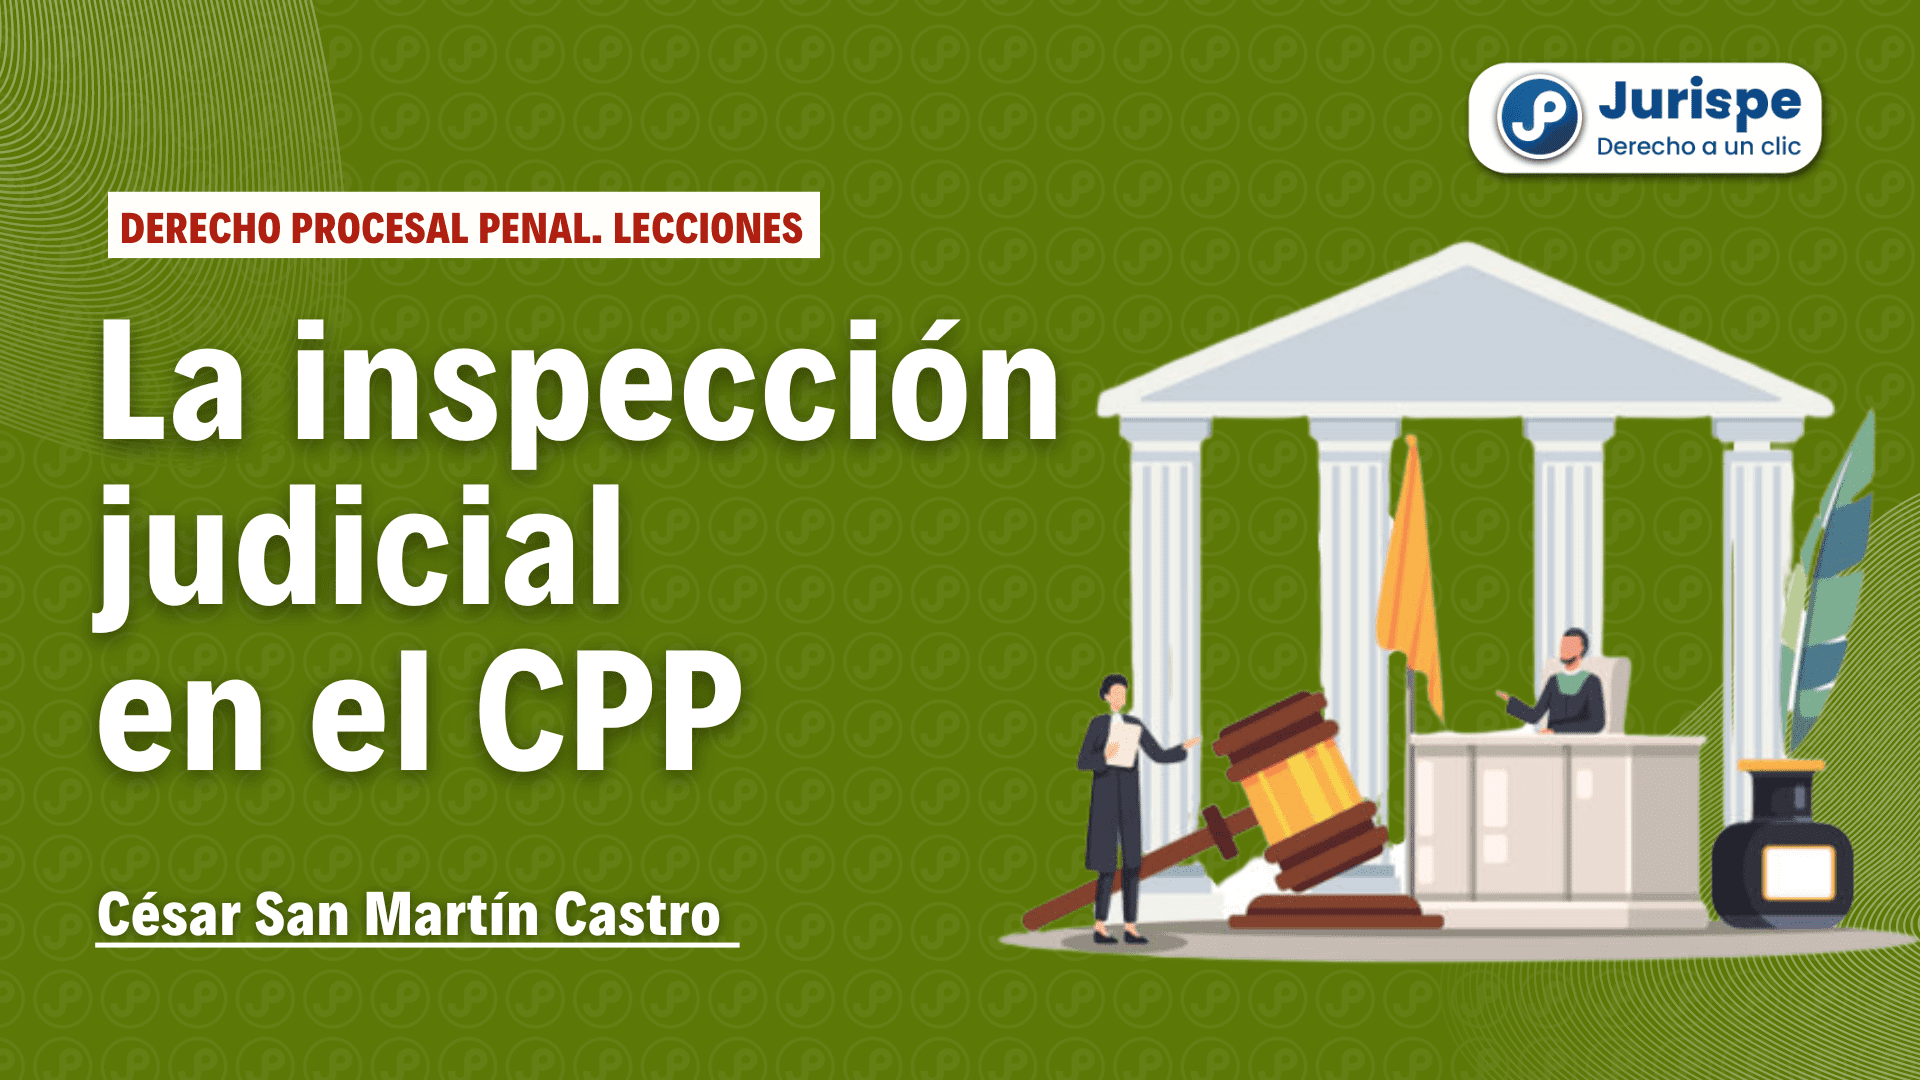 La inspección judicial en el proceso penal peruano. Bien explicado